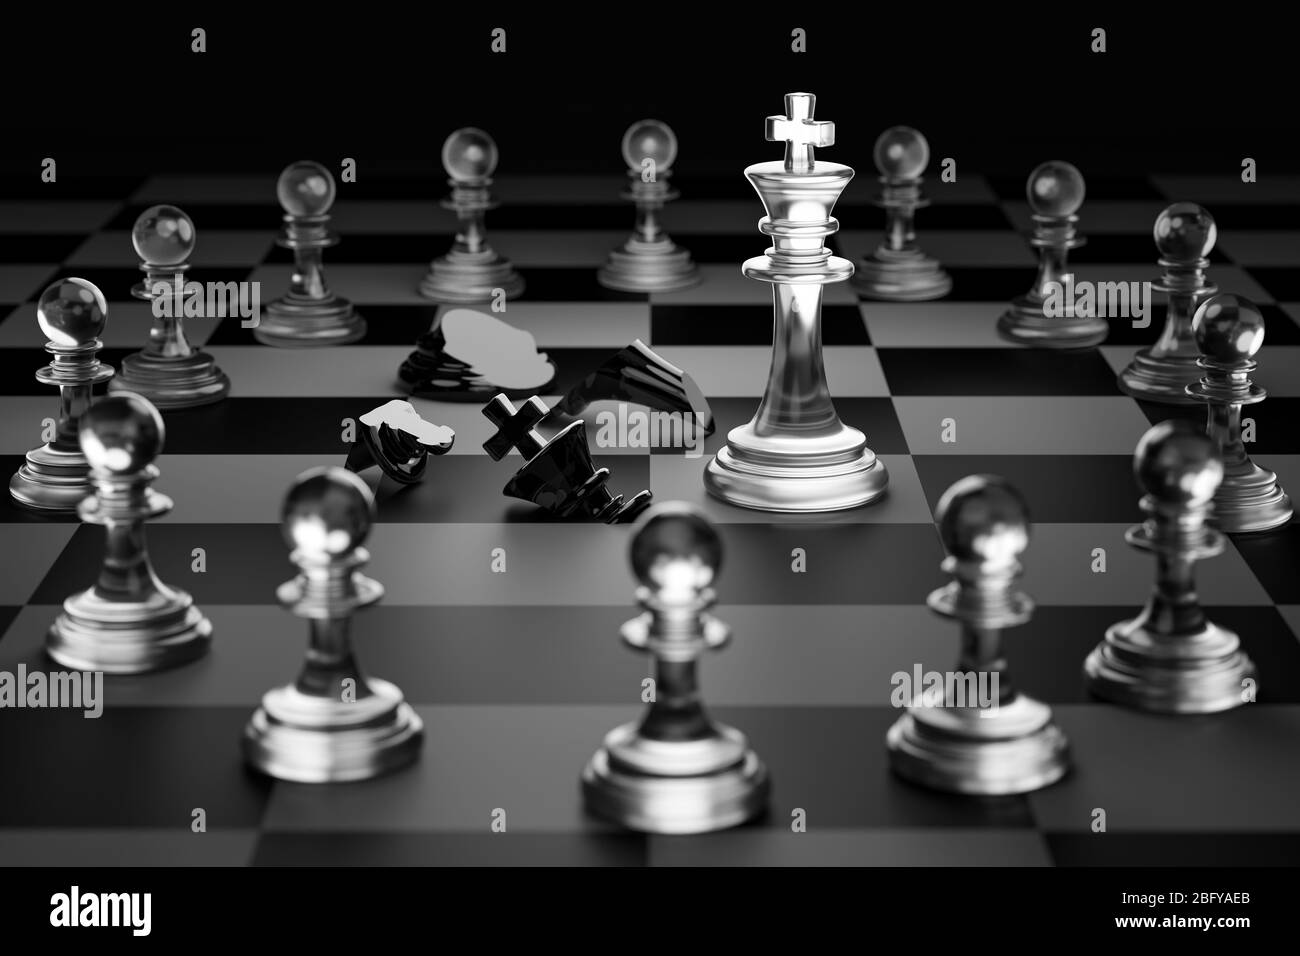 Roi d'échecs blancs clairs a fait le chéquier roi d'échecs noirs sur fond noir foncé. Concept de la planification stratégique du leadership pour la victoire Banque D'Images